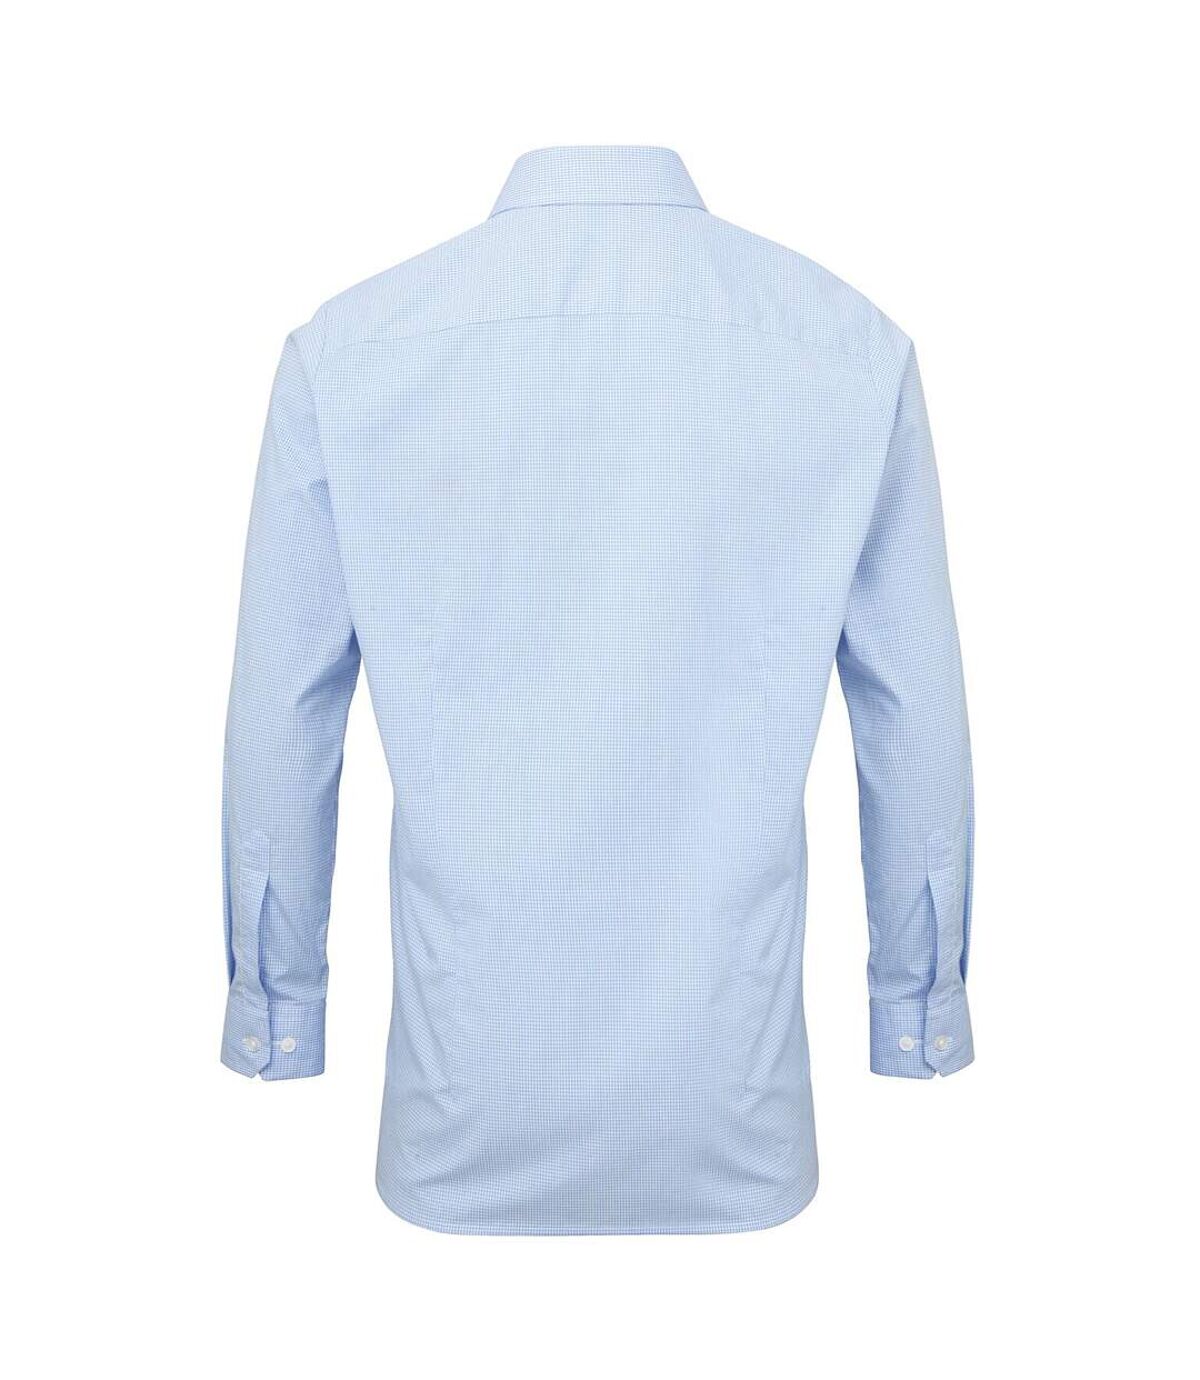 Premier Mens Microcheck Long Sleeve Shirt (Light Blue/White) - UTRW5526